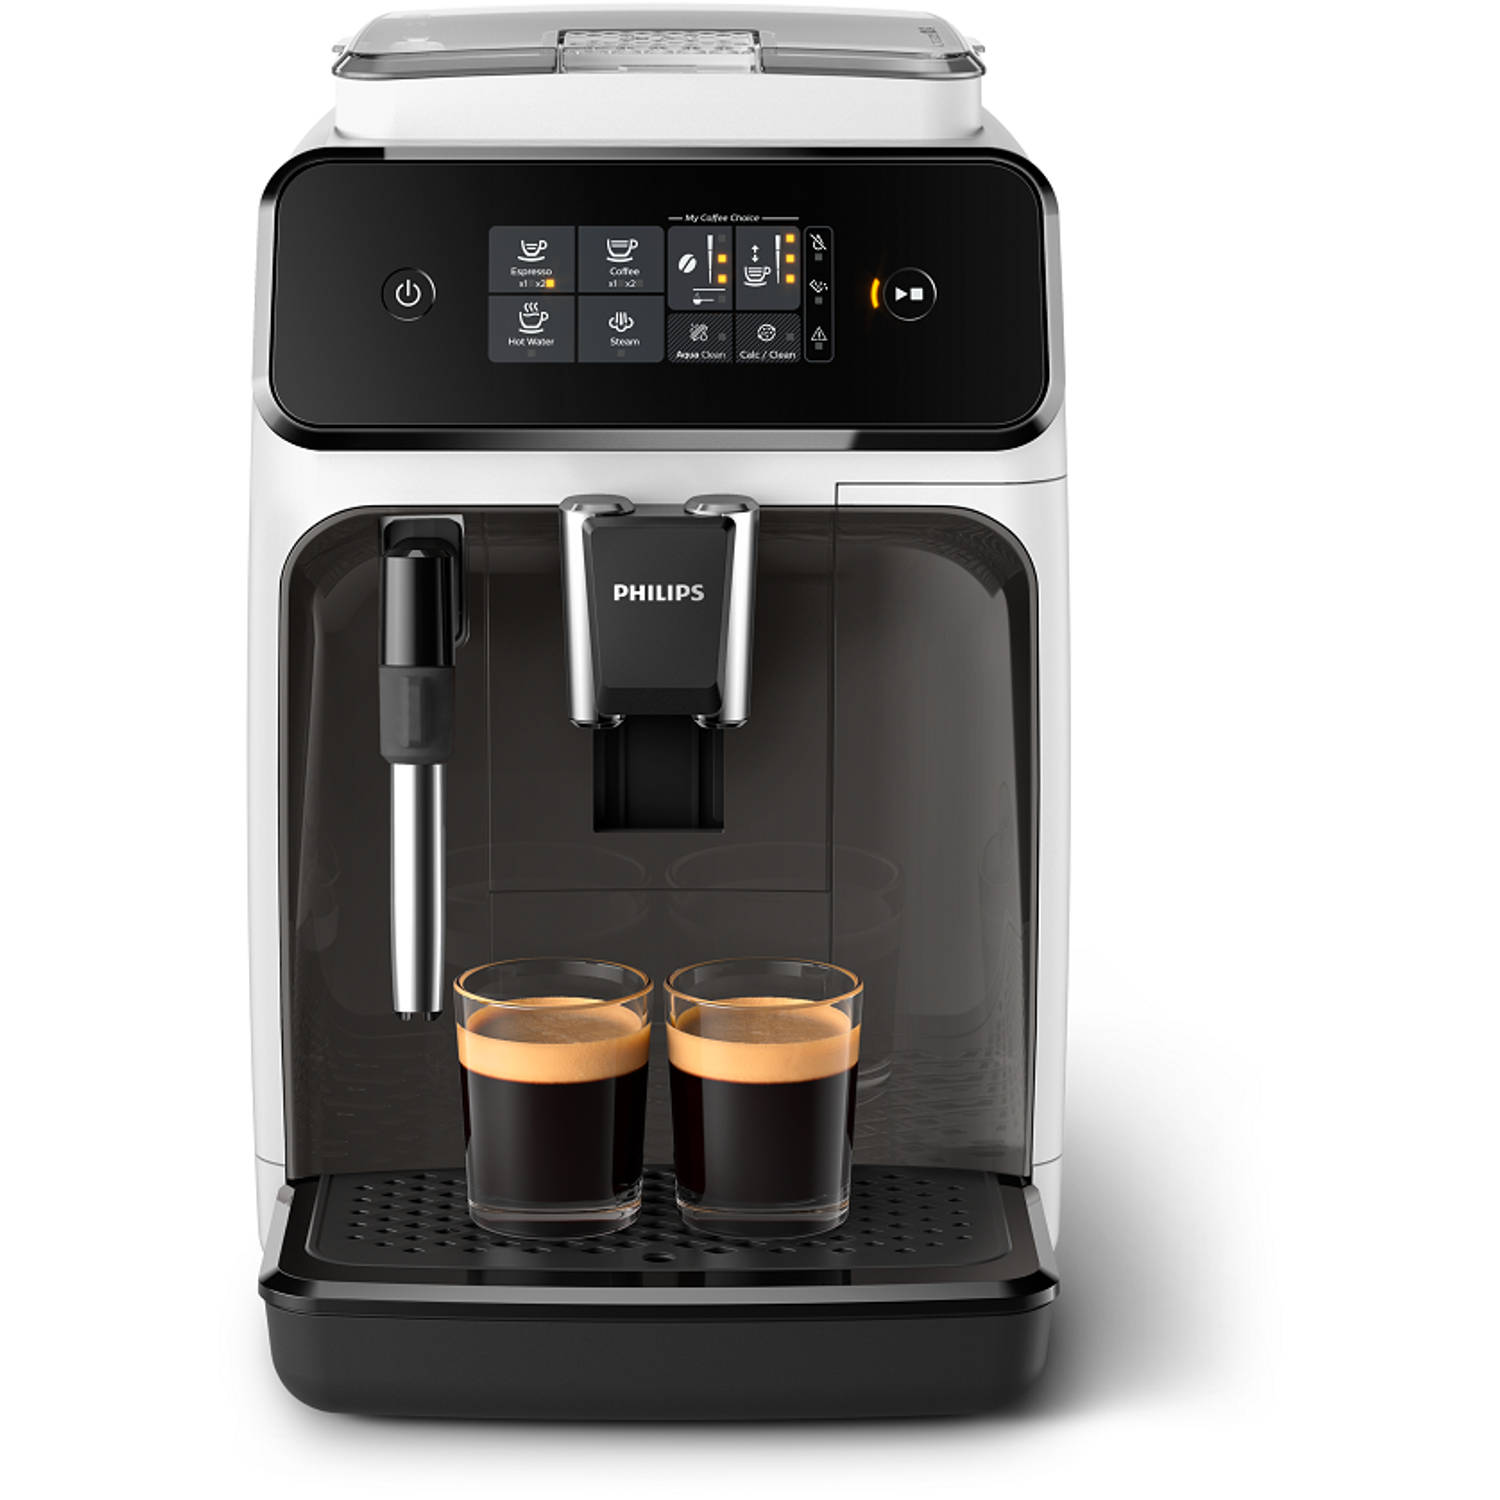 Regeringsverordening Giet schaal Philips volautomaat espressomachine 1200 series EP1223/00 - wit | Blokker